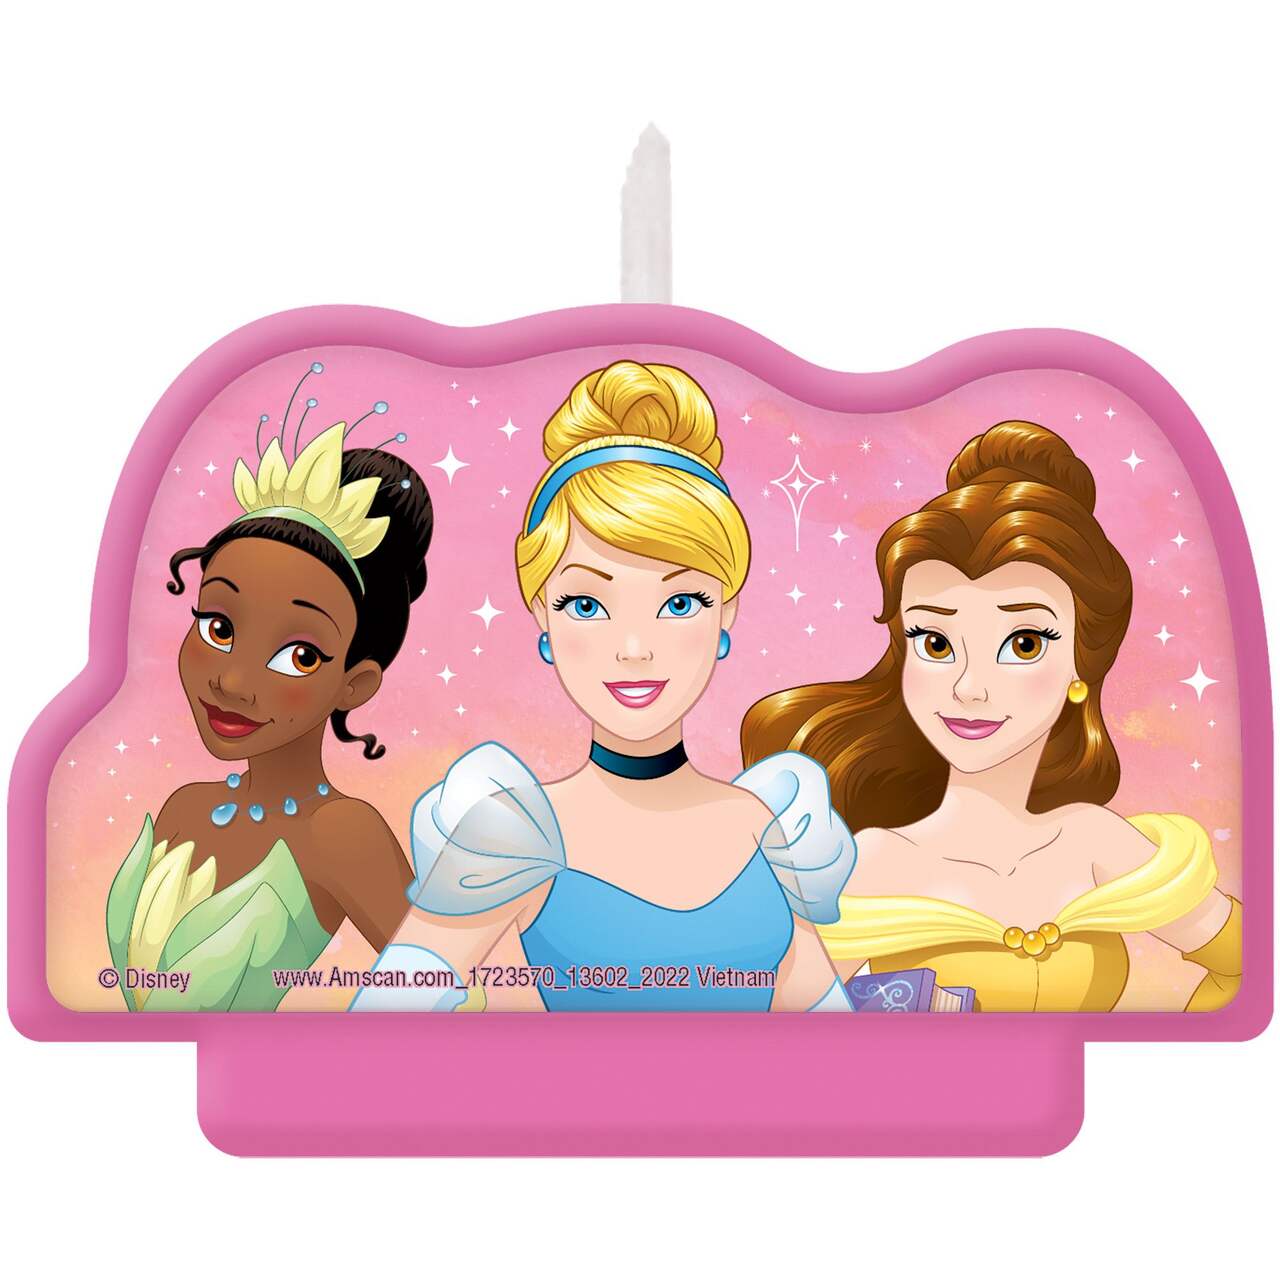 Celebrating Disney Princesses of Colour